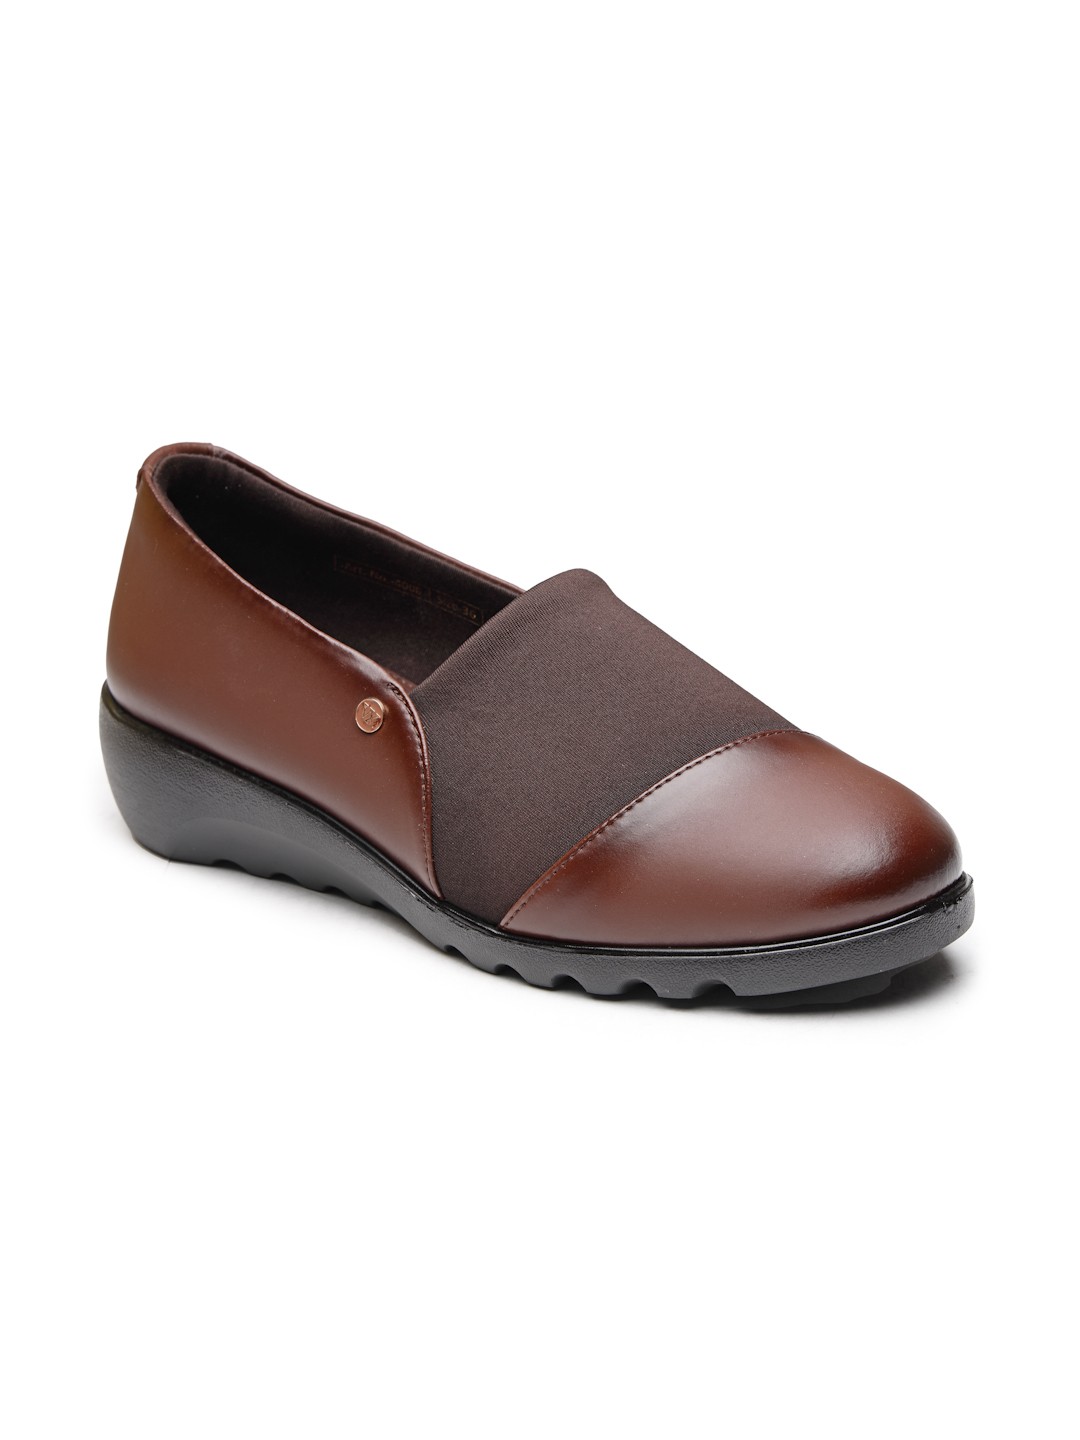 Buy Von Wellx Germany Comfort Women's Brown Casual Shoes Ayla Online in Oman